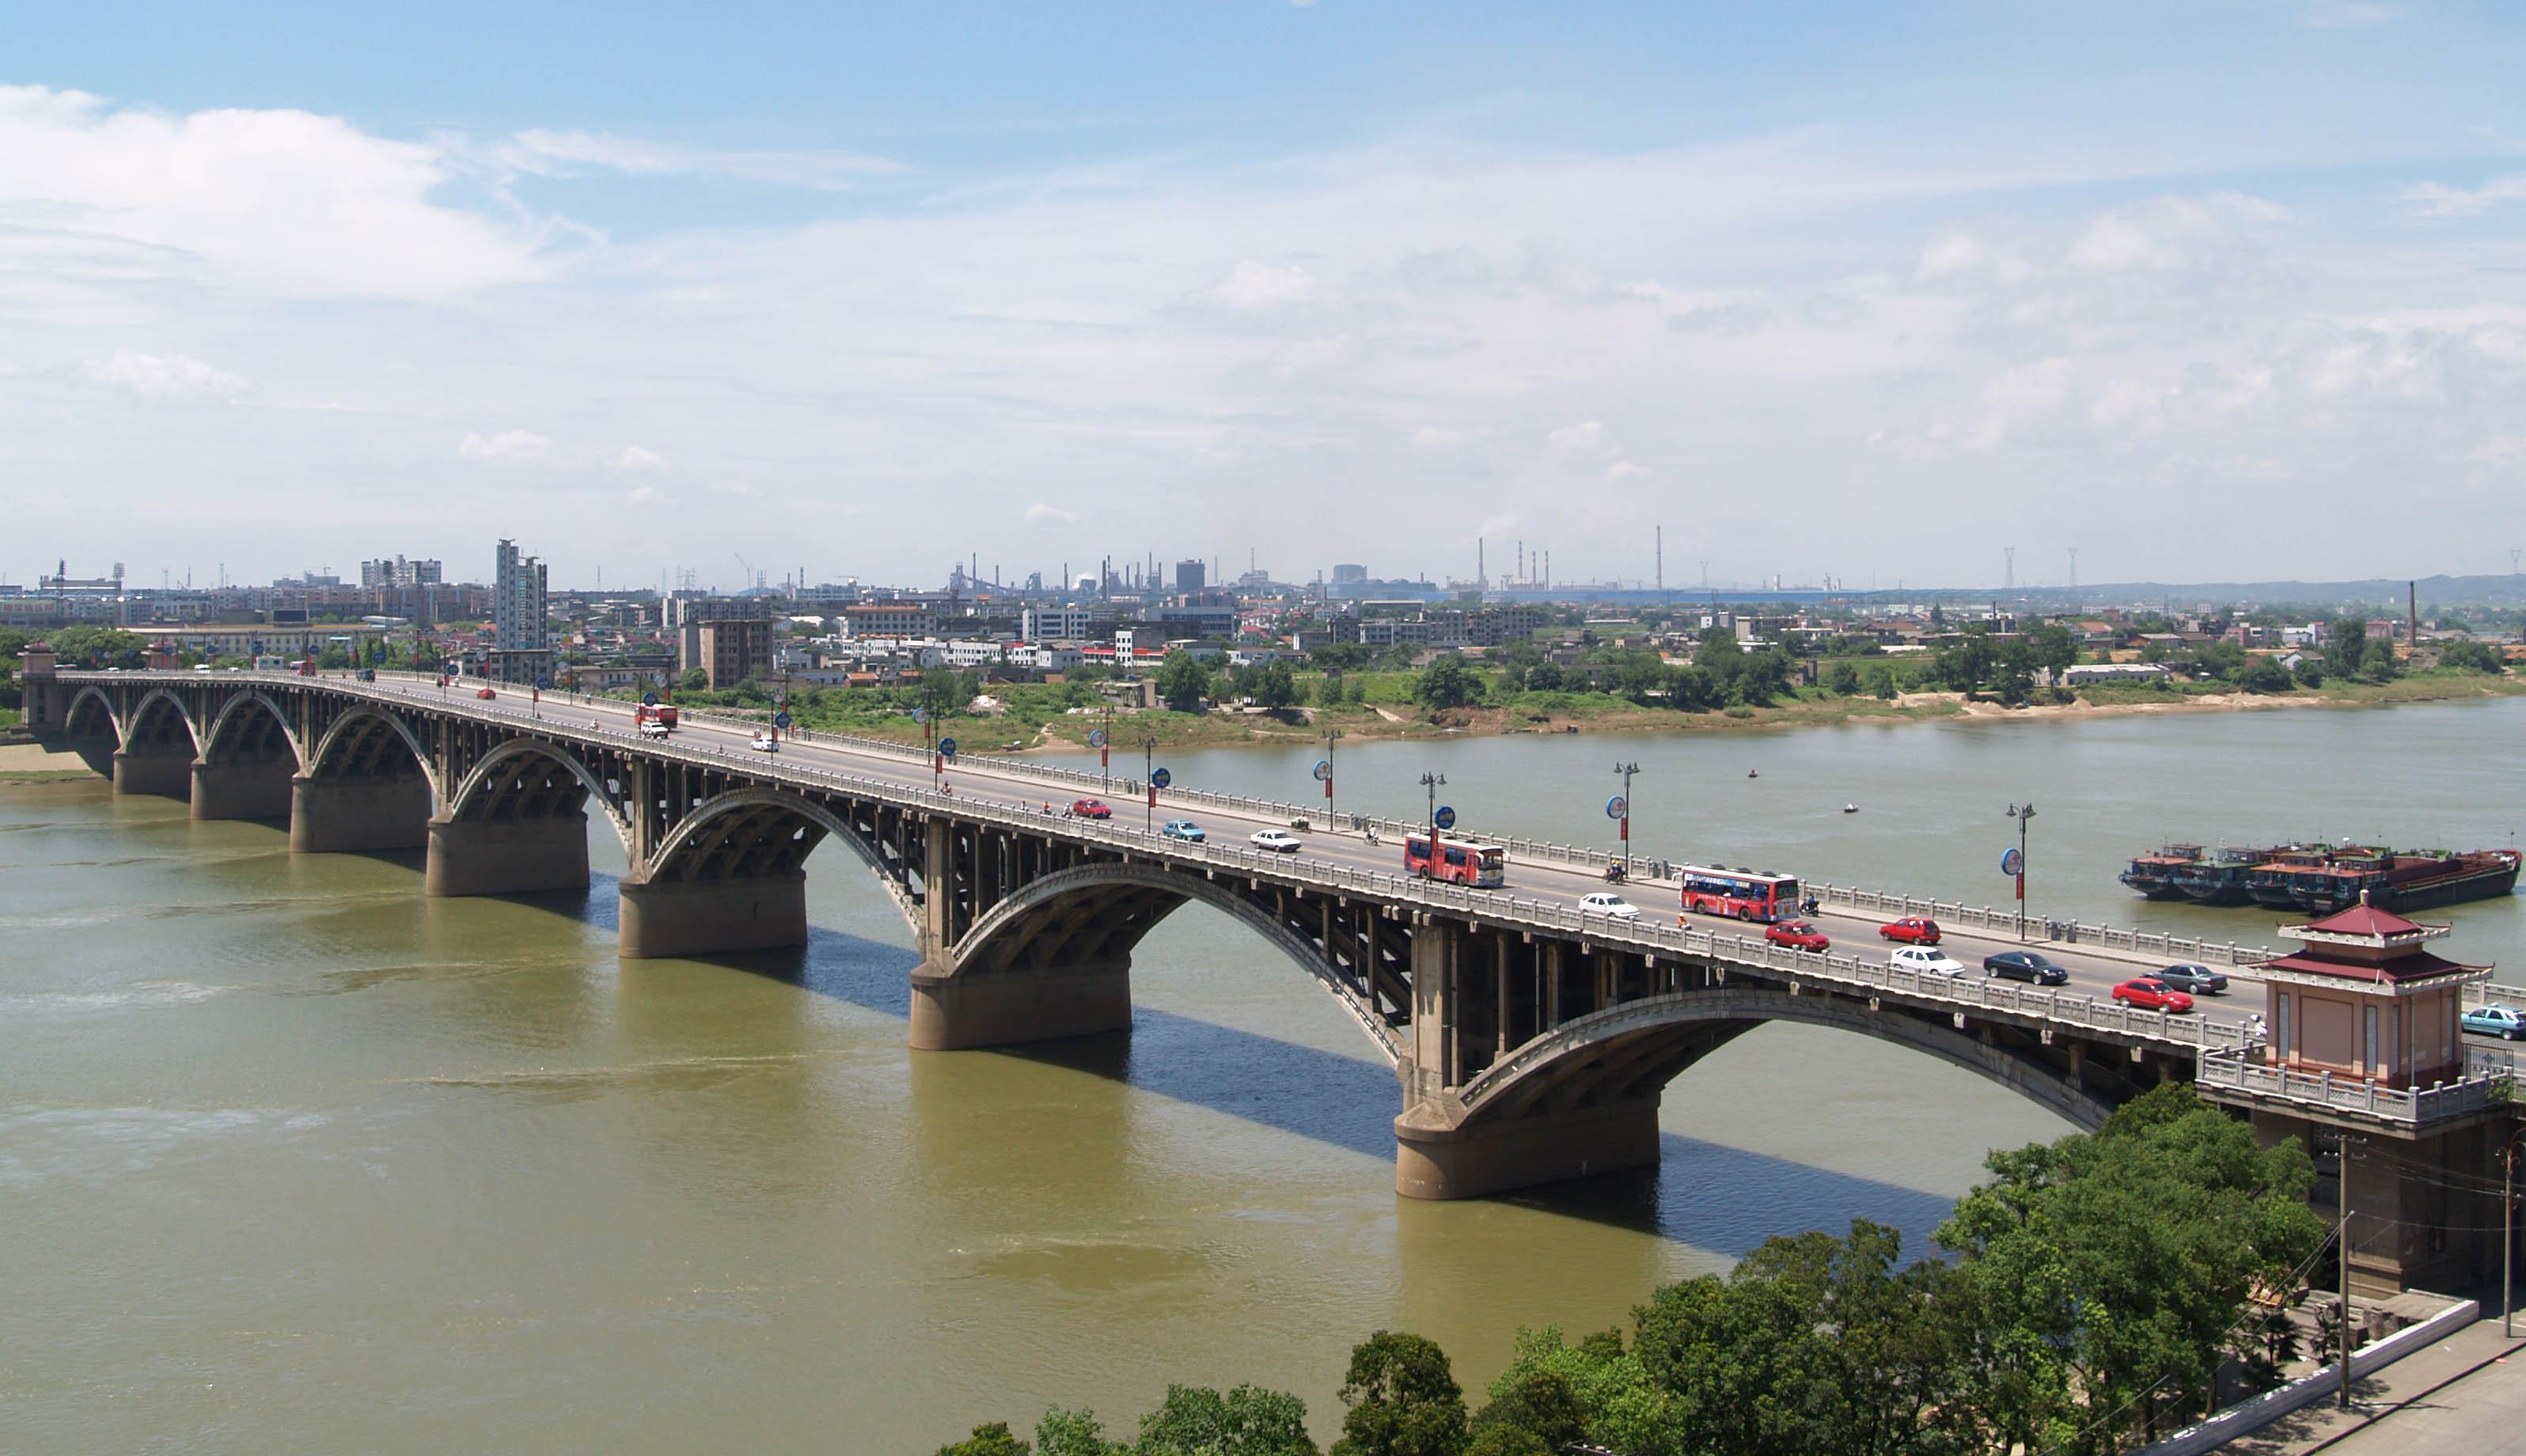 公司承建的湘潭一大橋工程被譽為“千里湘江第一橋”，比長沙市的第一座湘江大橋還早10年，一直以來是湘潭市標志性建筑